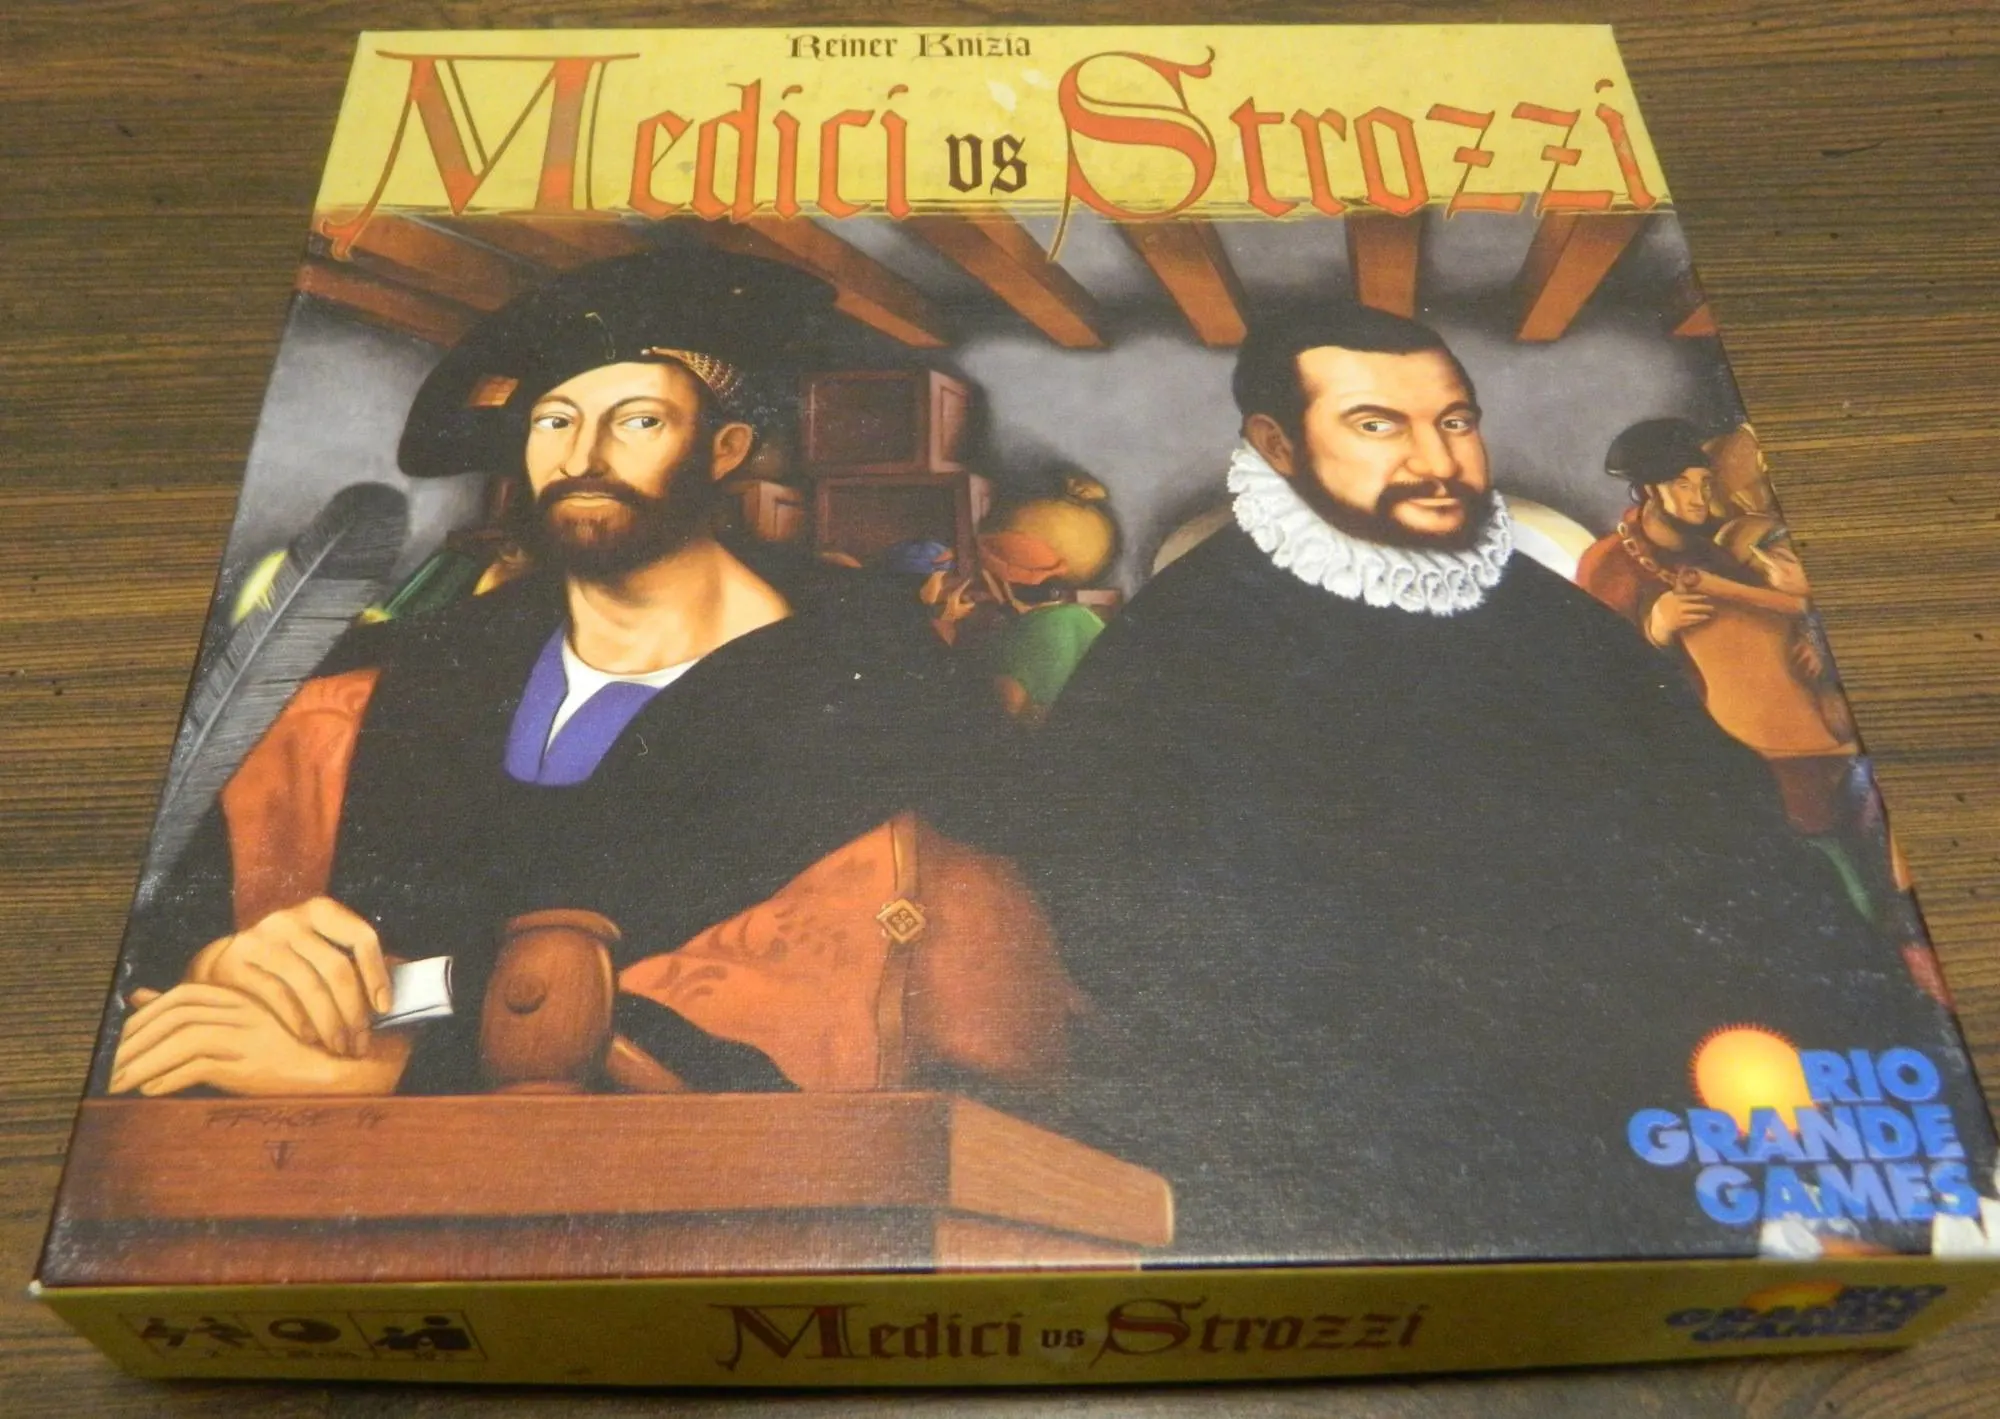 Box for Medici vs Strozzi